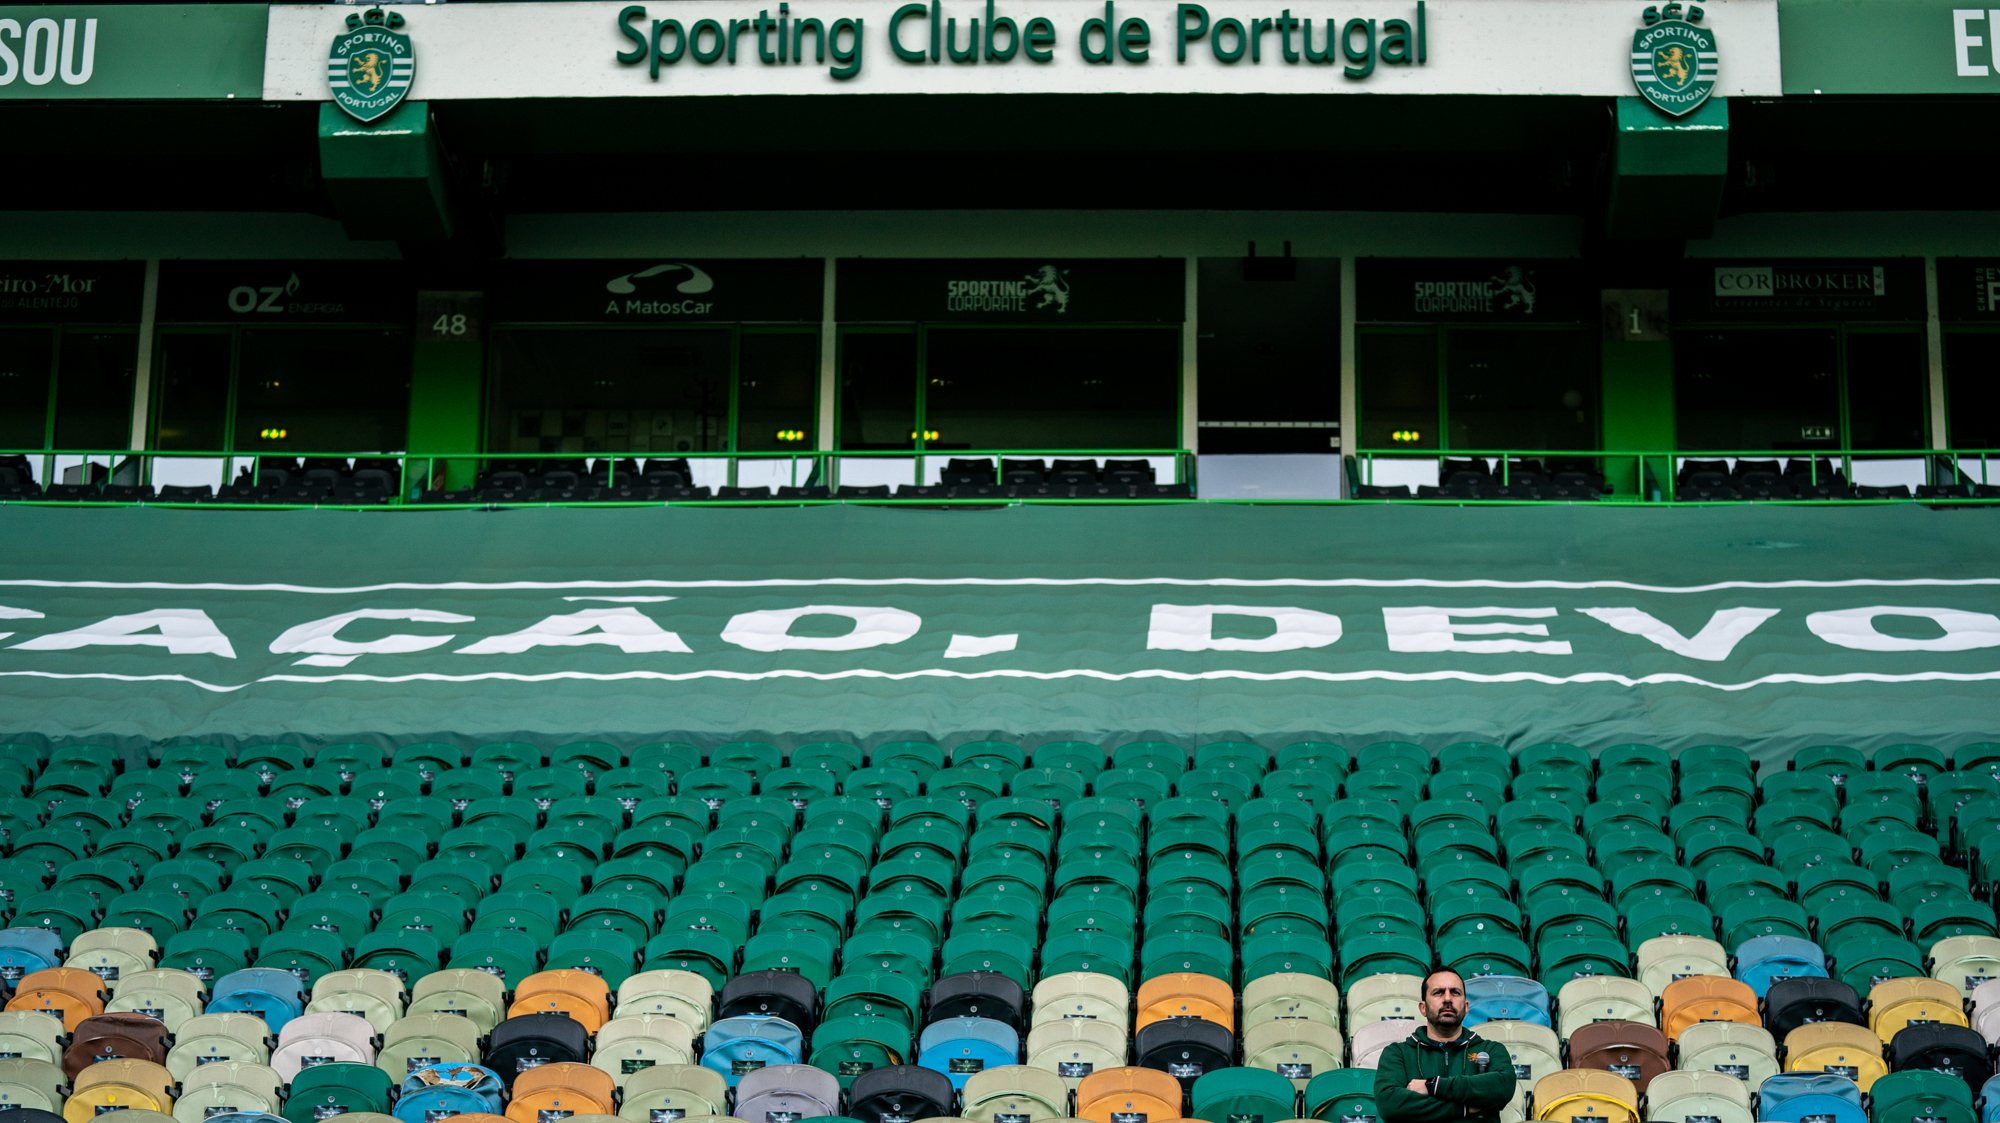 Sporting verá os seus lucros aumentarem após o recente triunfo na Primeira Liga e consequente entrada na Liga dos Campeões